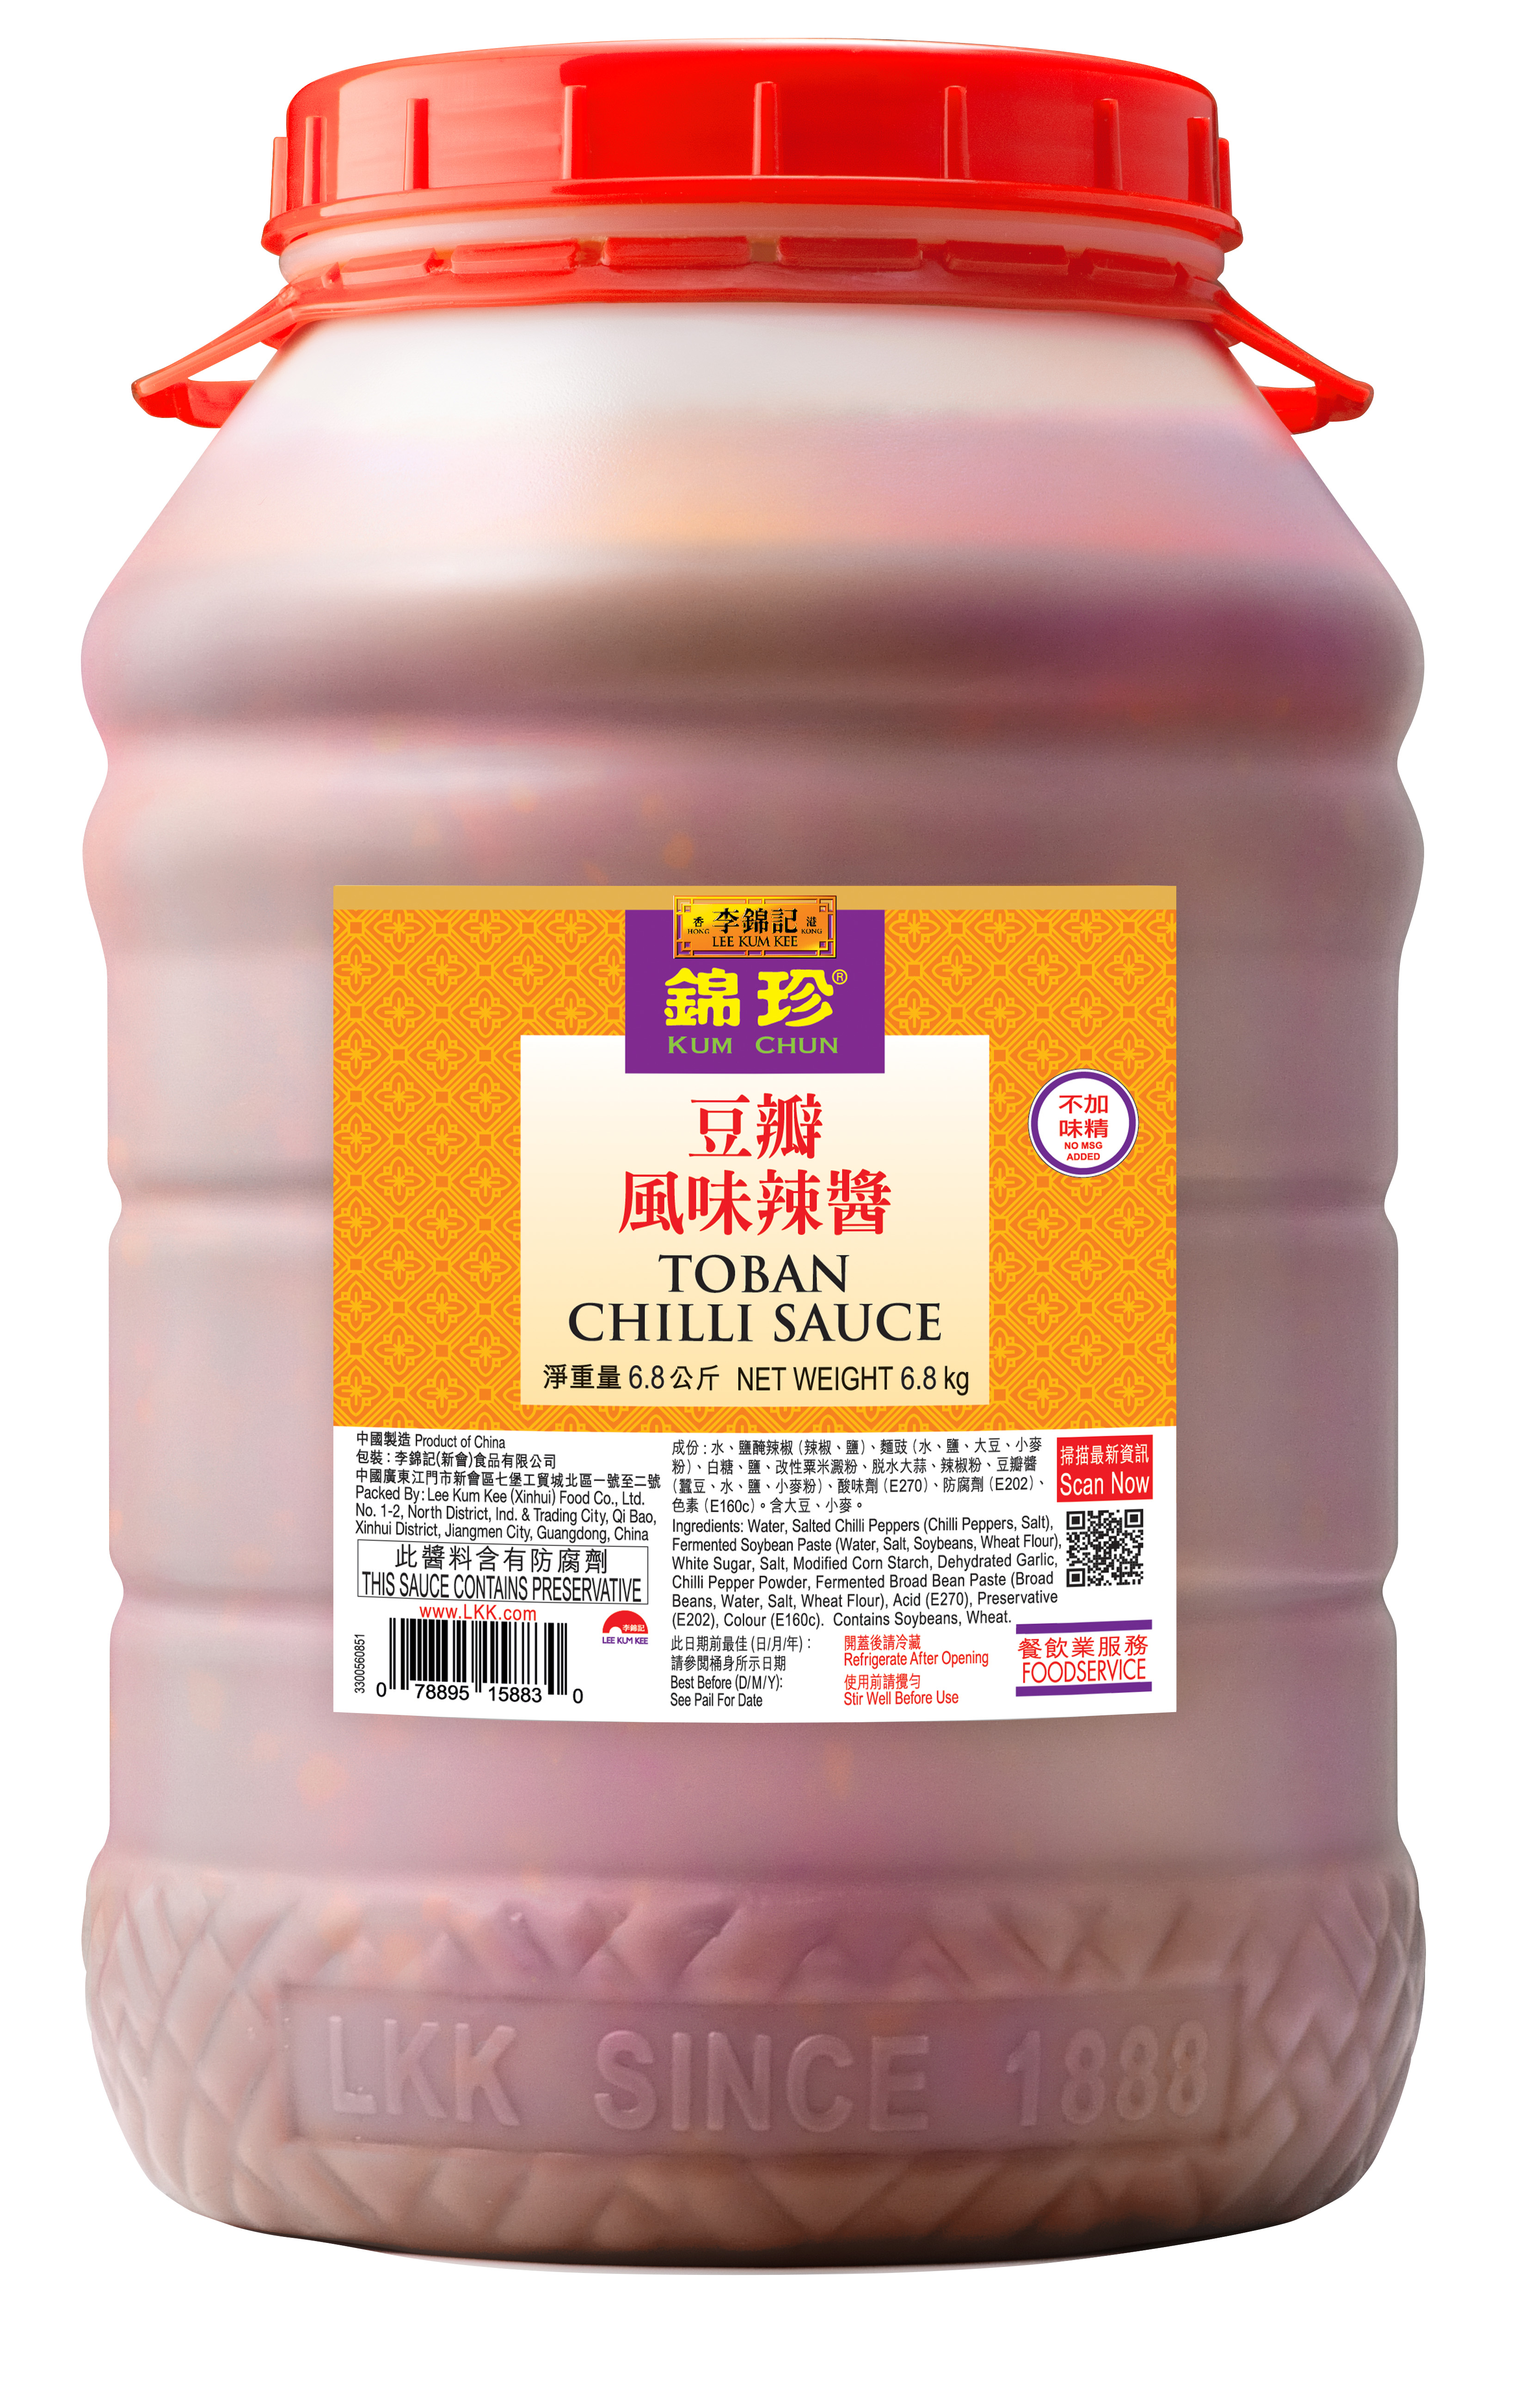 Kum Chun Toban Chilli Sauce (No MSG Added) 6.8kg